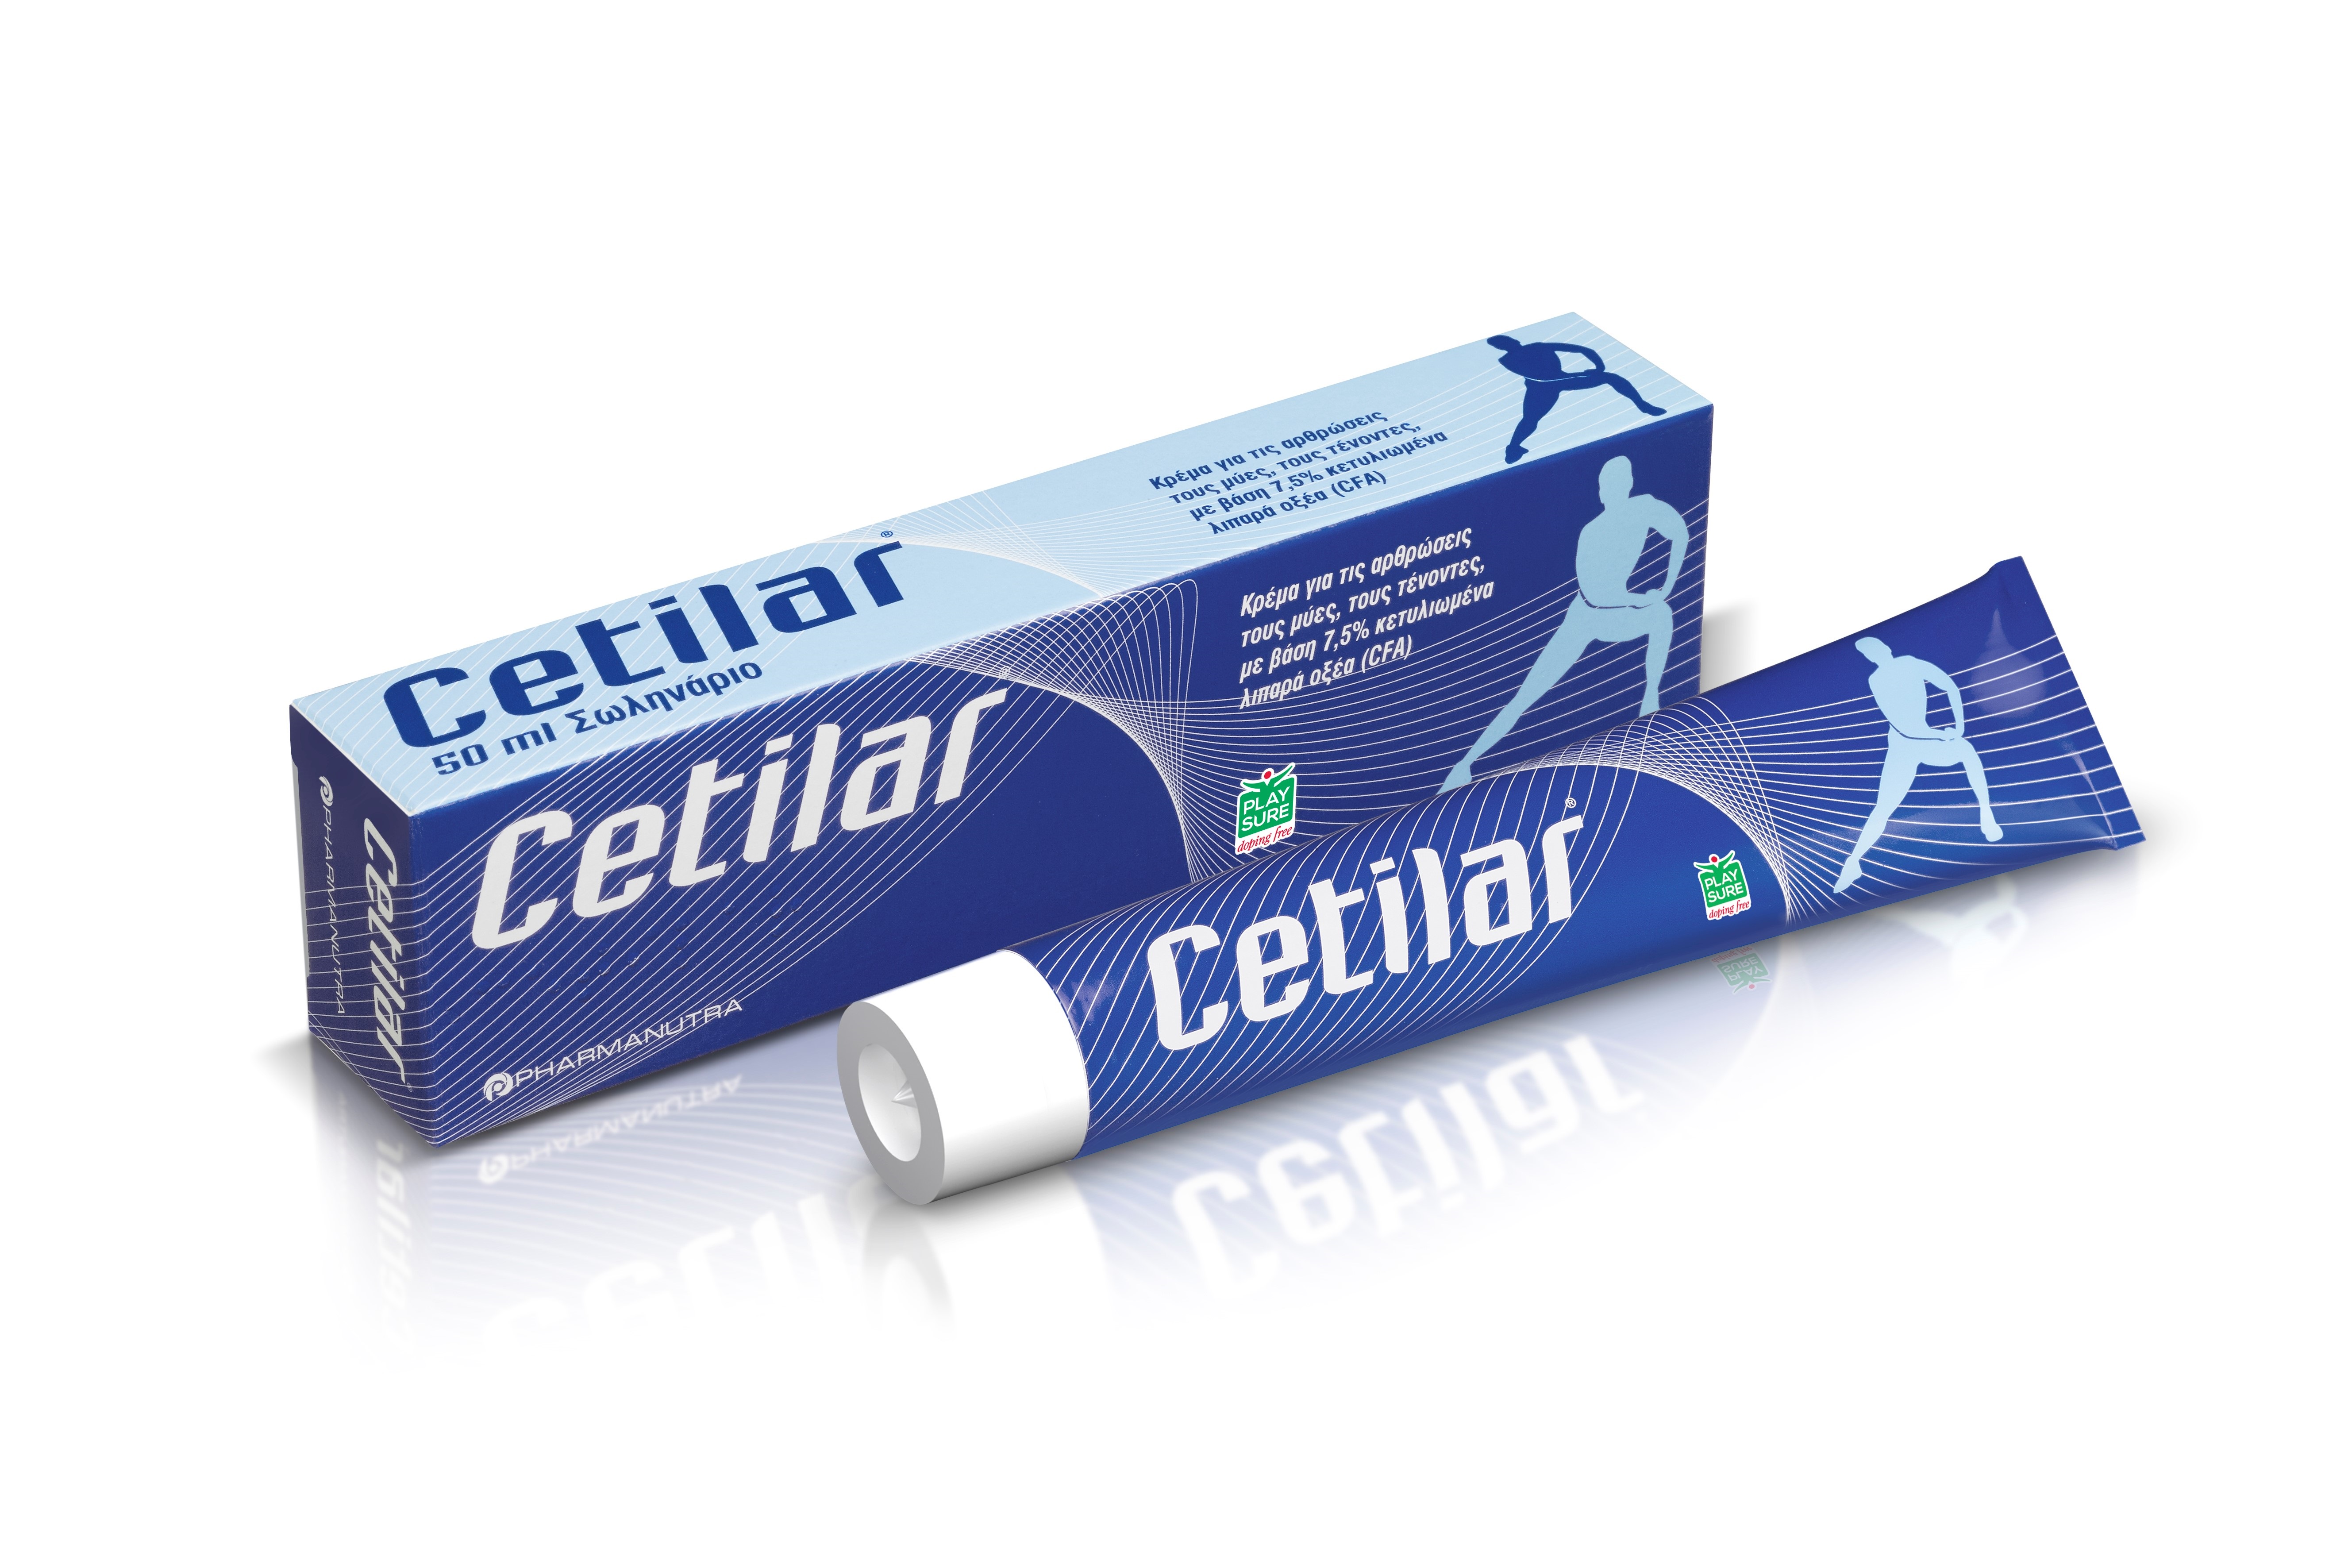 Cetilar: Κρέμα για την αντιμετώπιση του πόνου σε μυς, αρθρώσεις και τένοντες